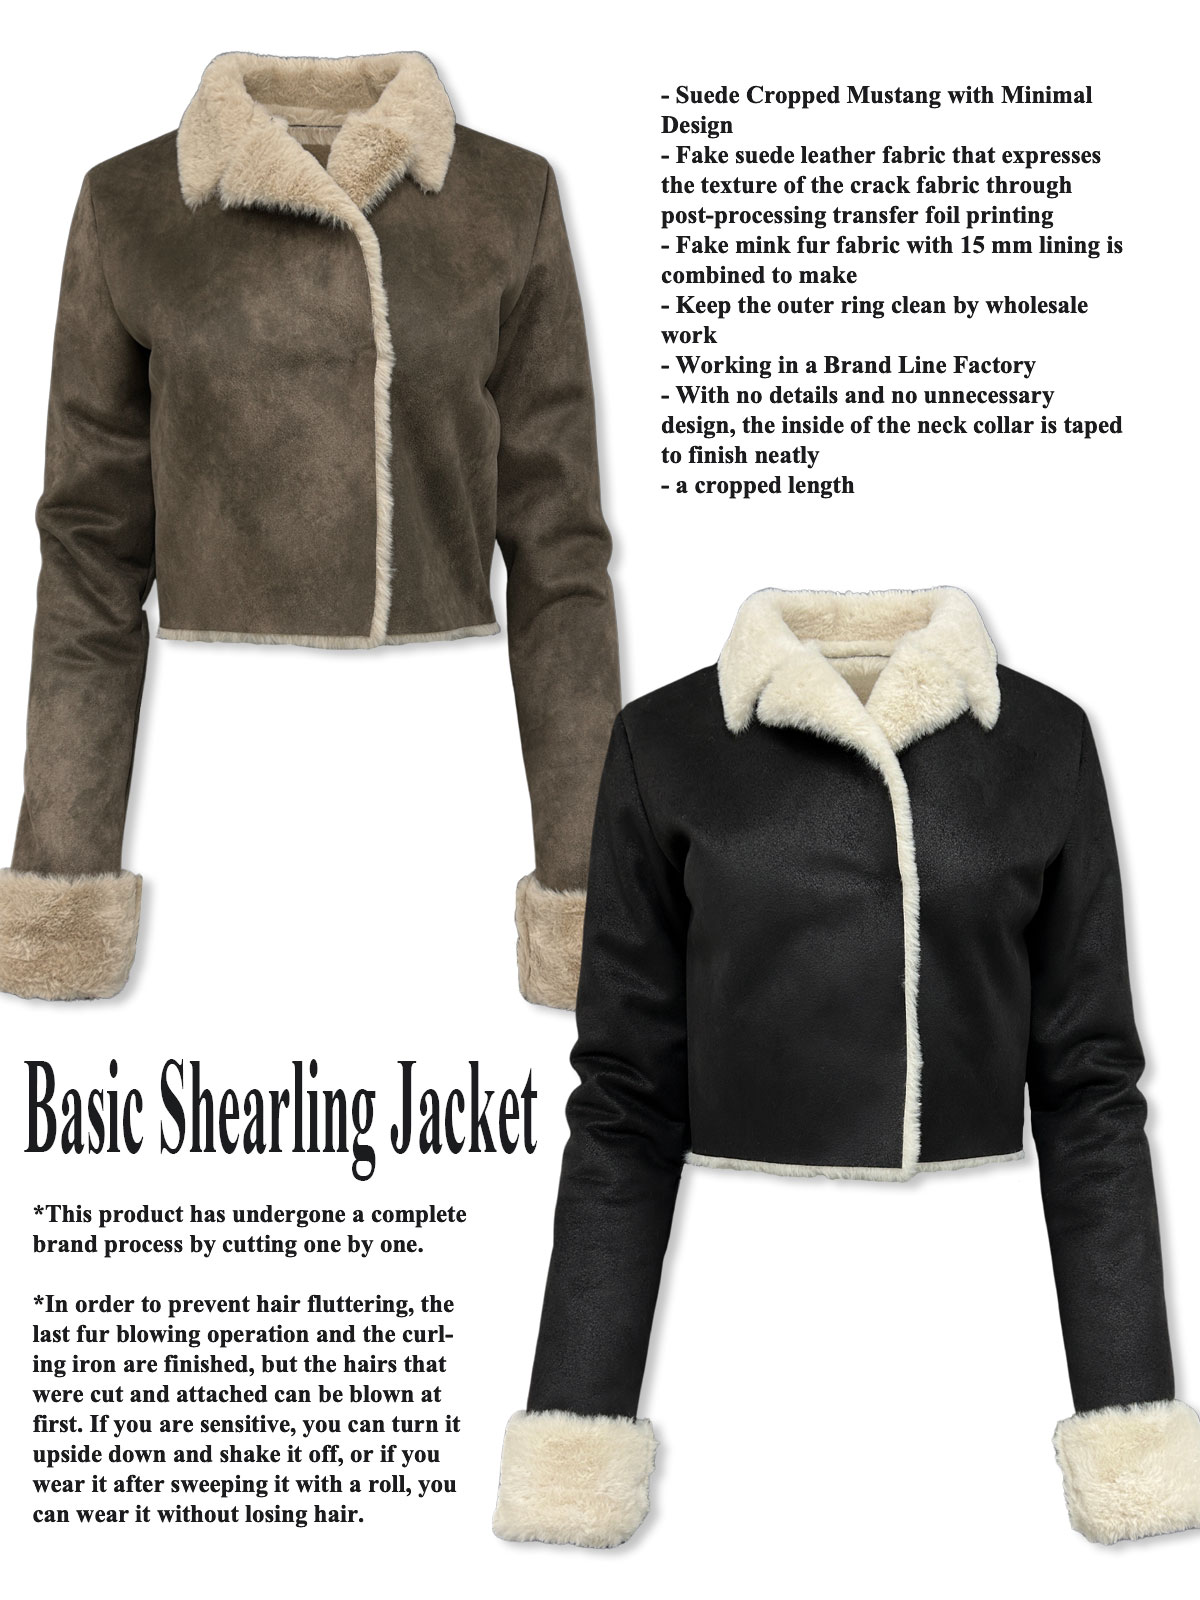 Basic Shearling Jacket